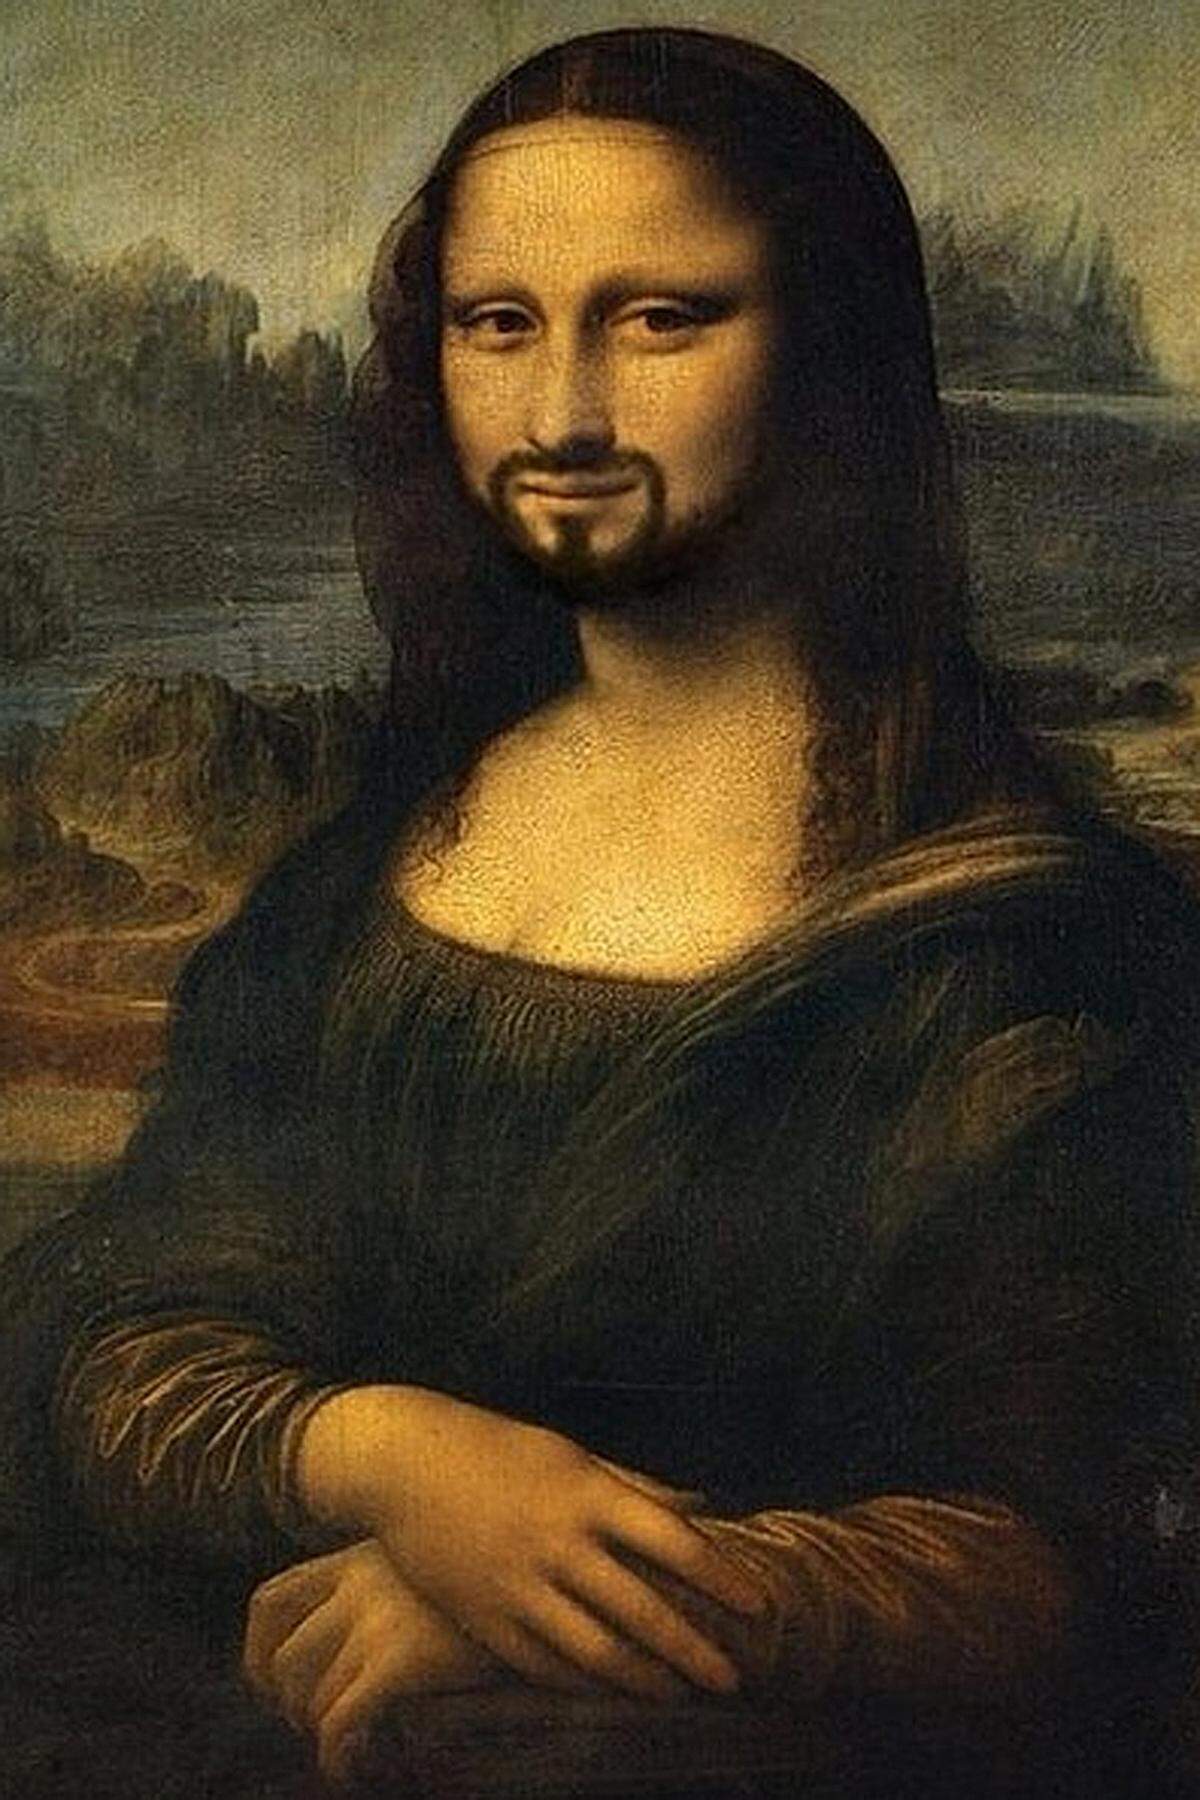 Der Bart der Frau Wurst rüttelte sogar die Kunstszene auf. Auch der großen Mona Lisa wuchs nach dem Sieg für Österreich das Gesicht zu.